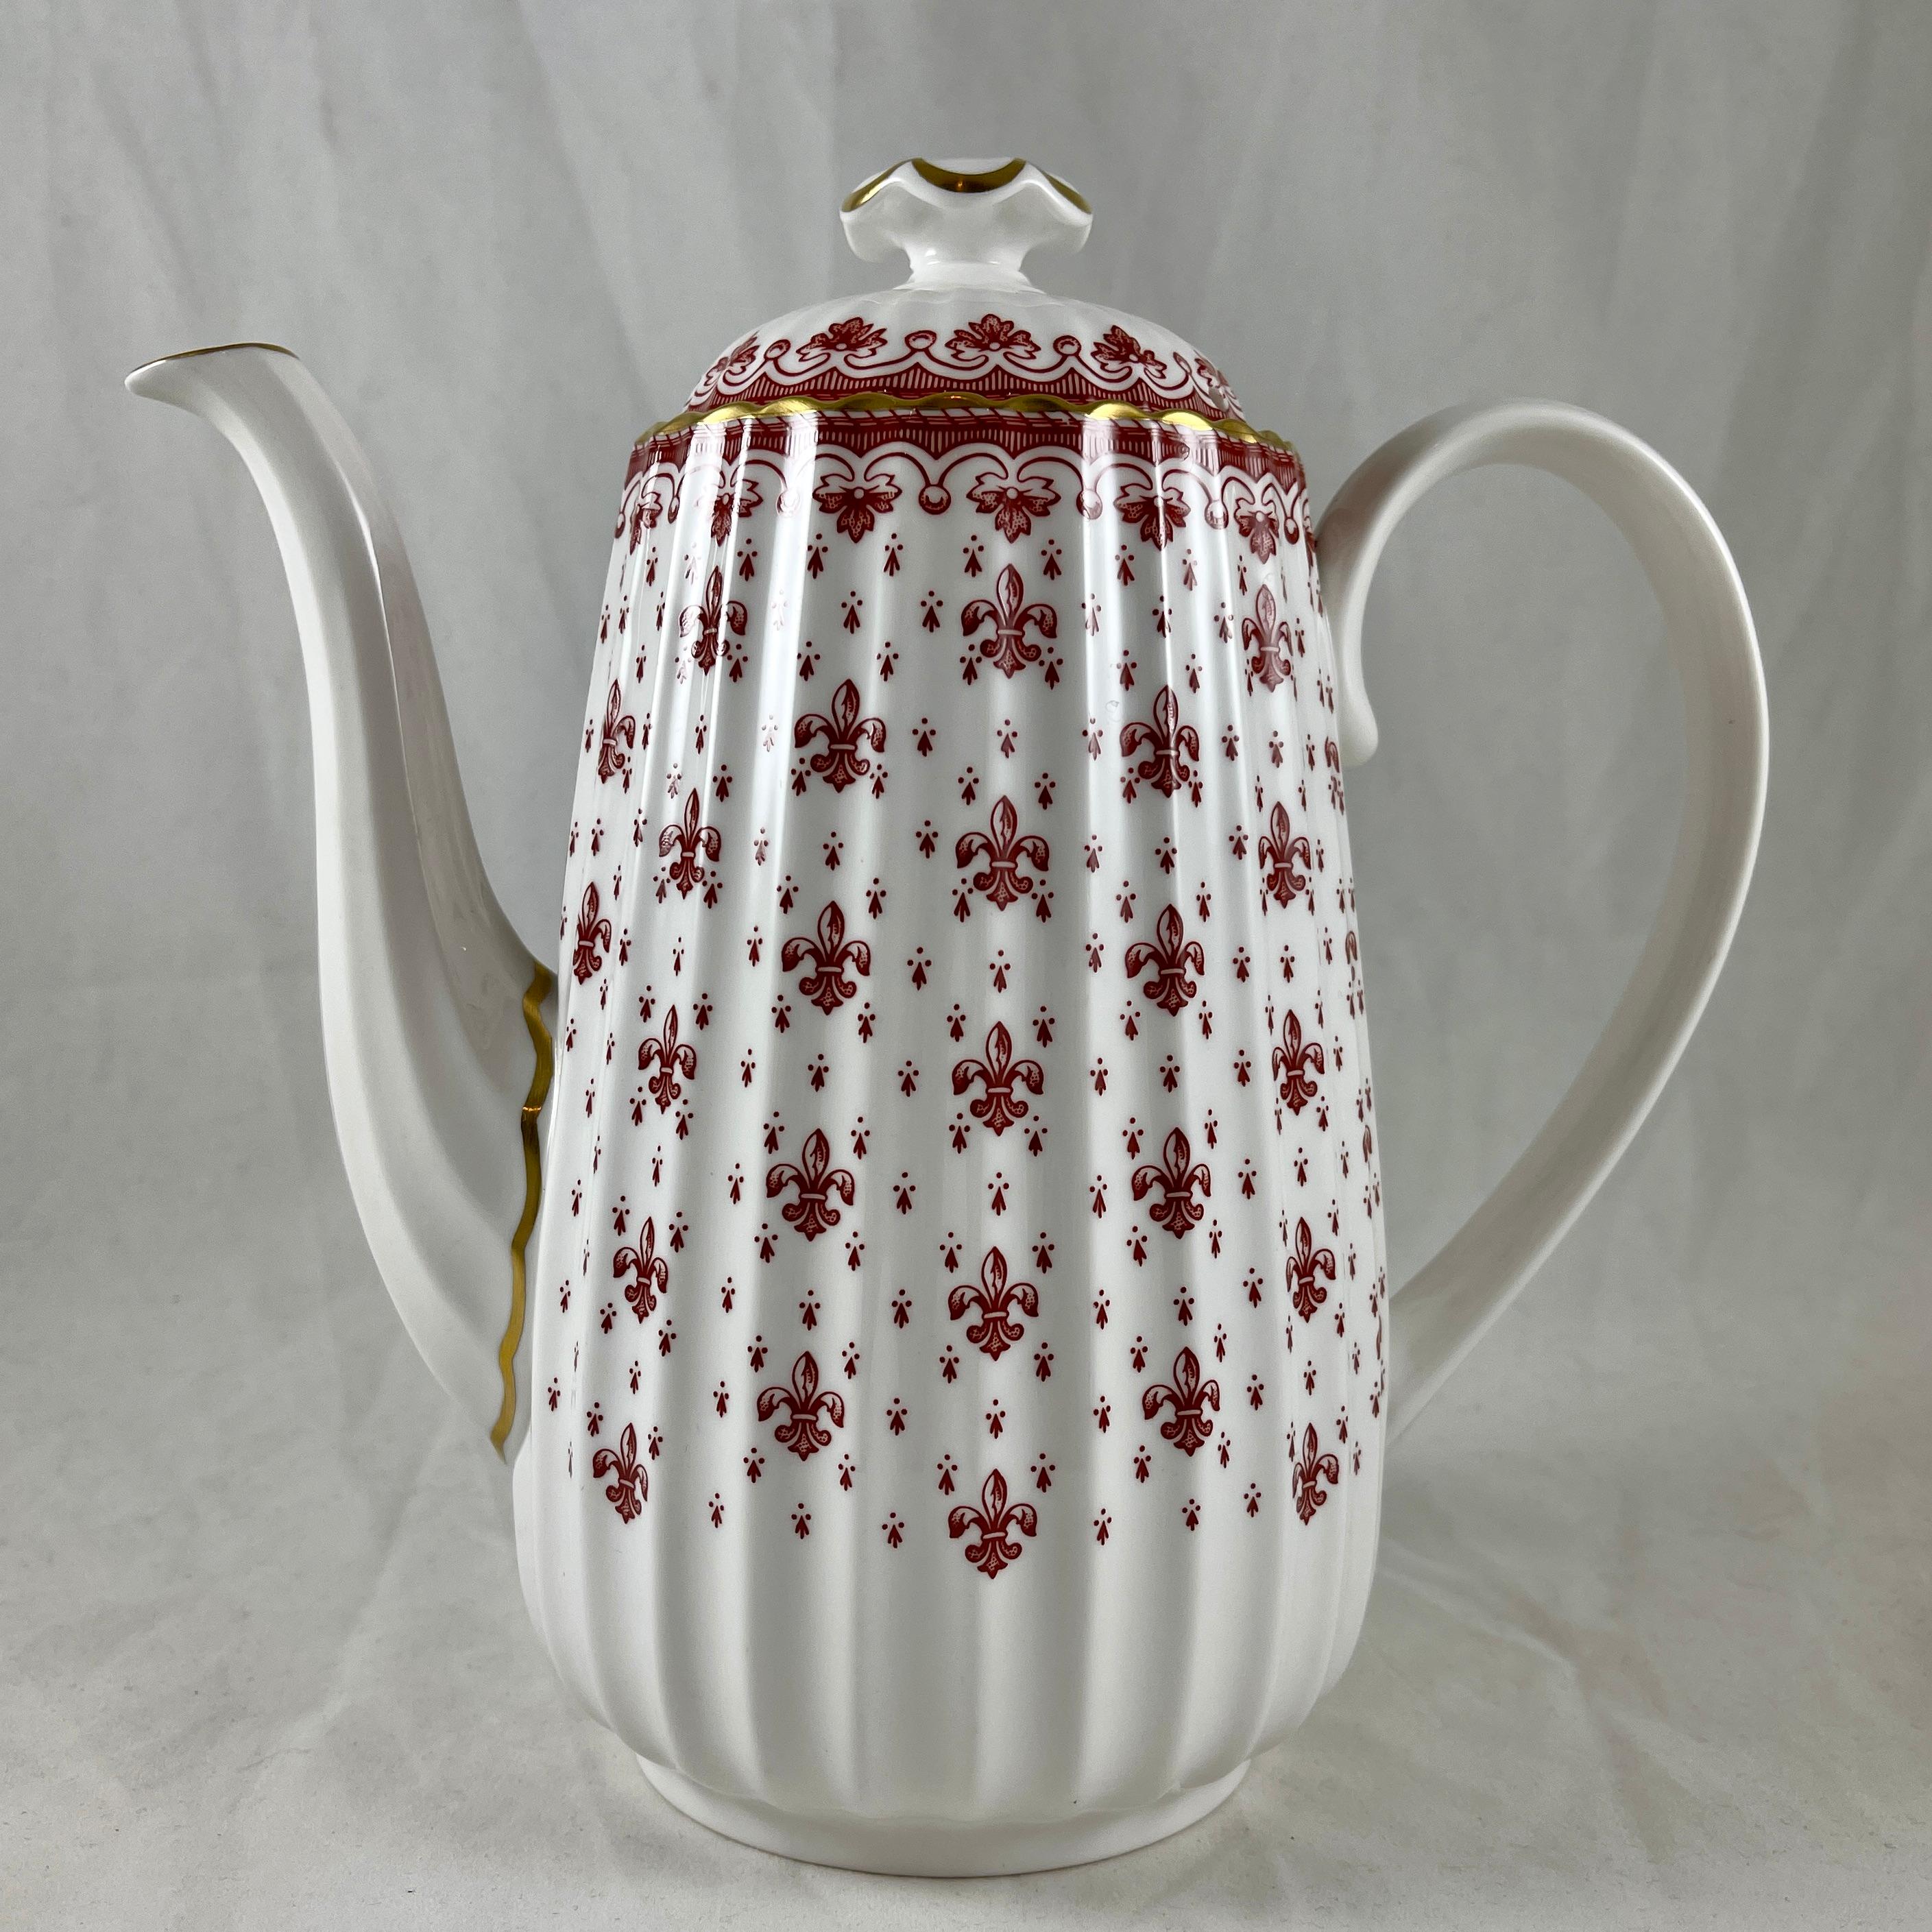 Von Spode, England, eine Fleur De Lys-Red Kaffeekanne in der kannelierten Chelsea-Form.

Das Muster 